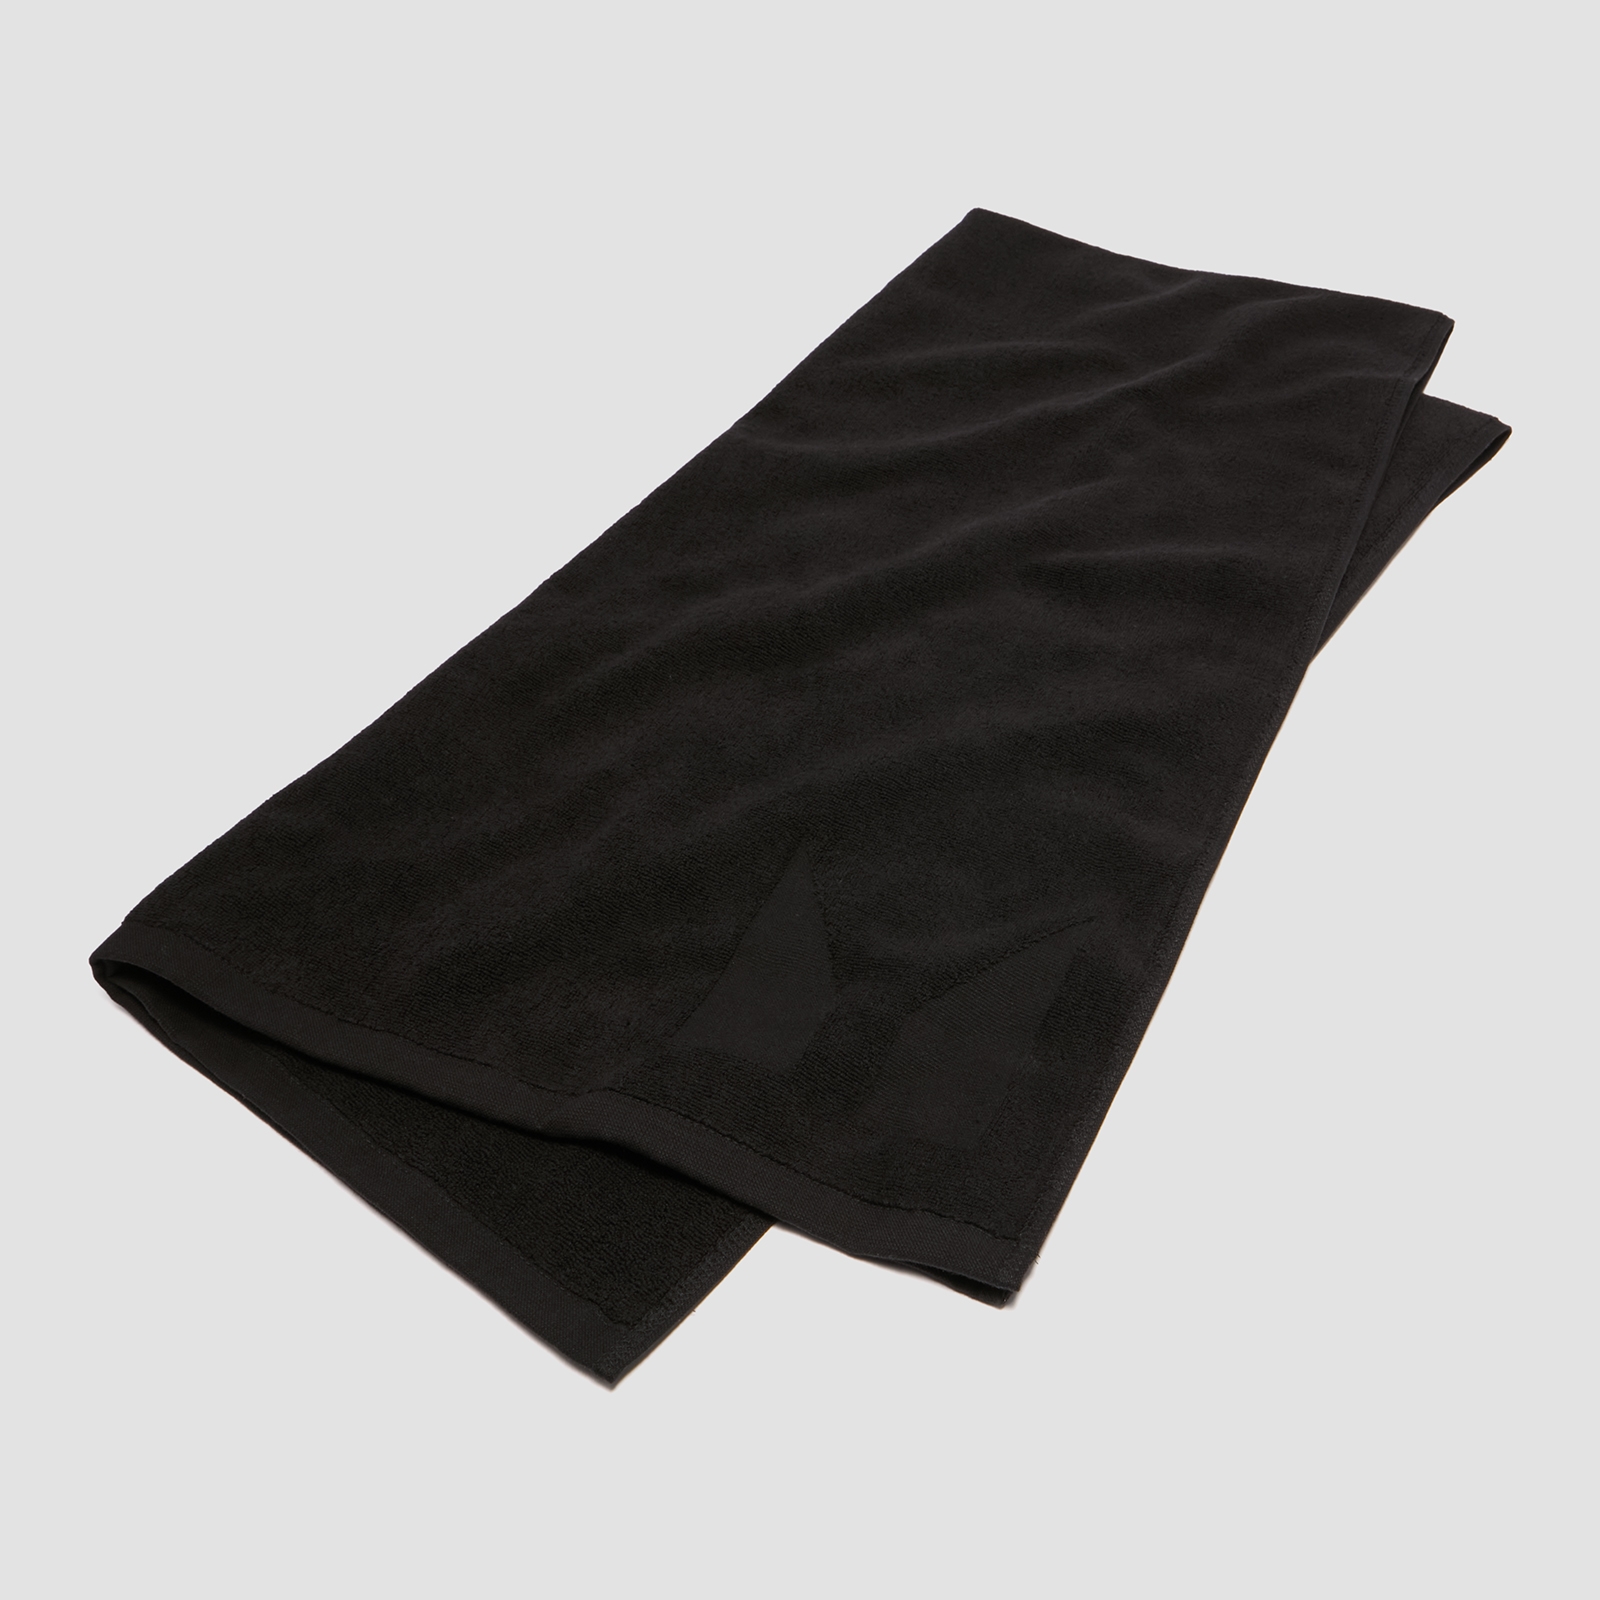 Grande serviette de bain (noire)